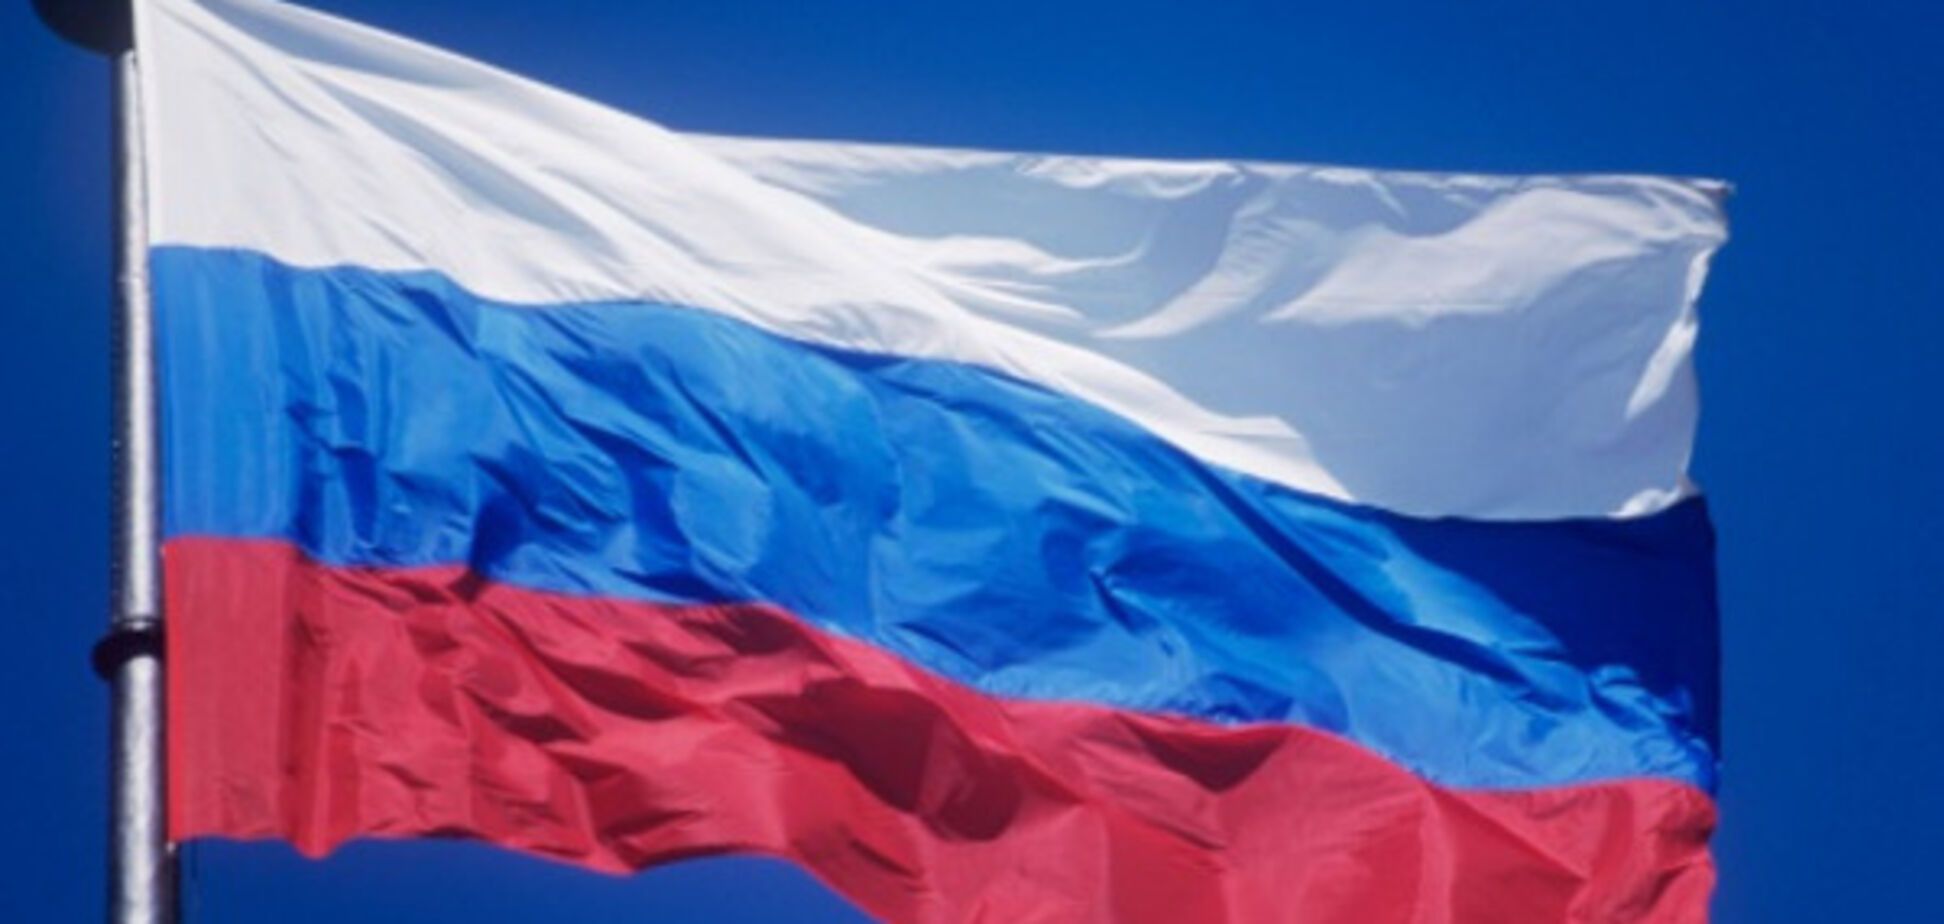 Прапор Росії